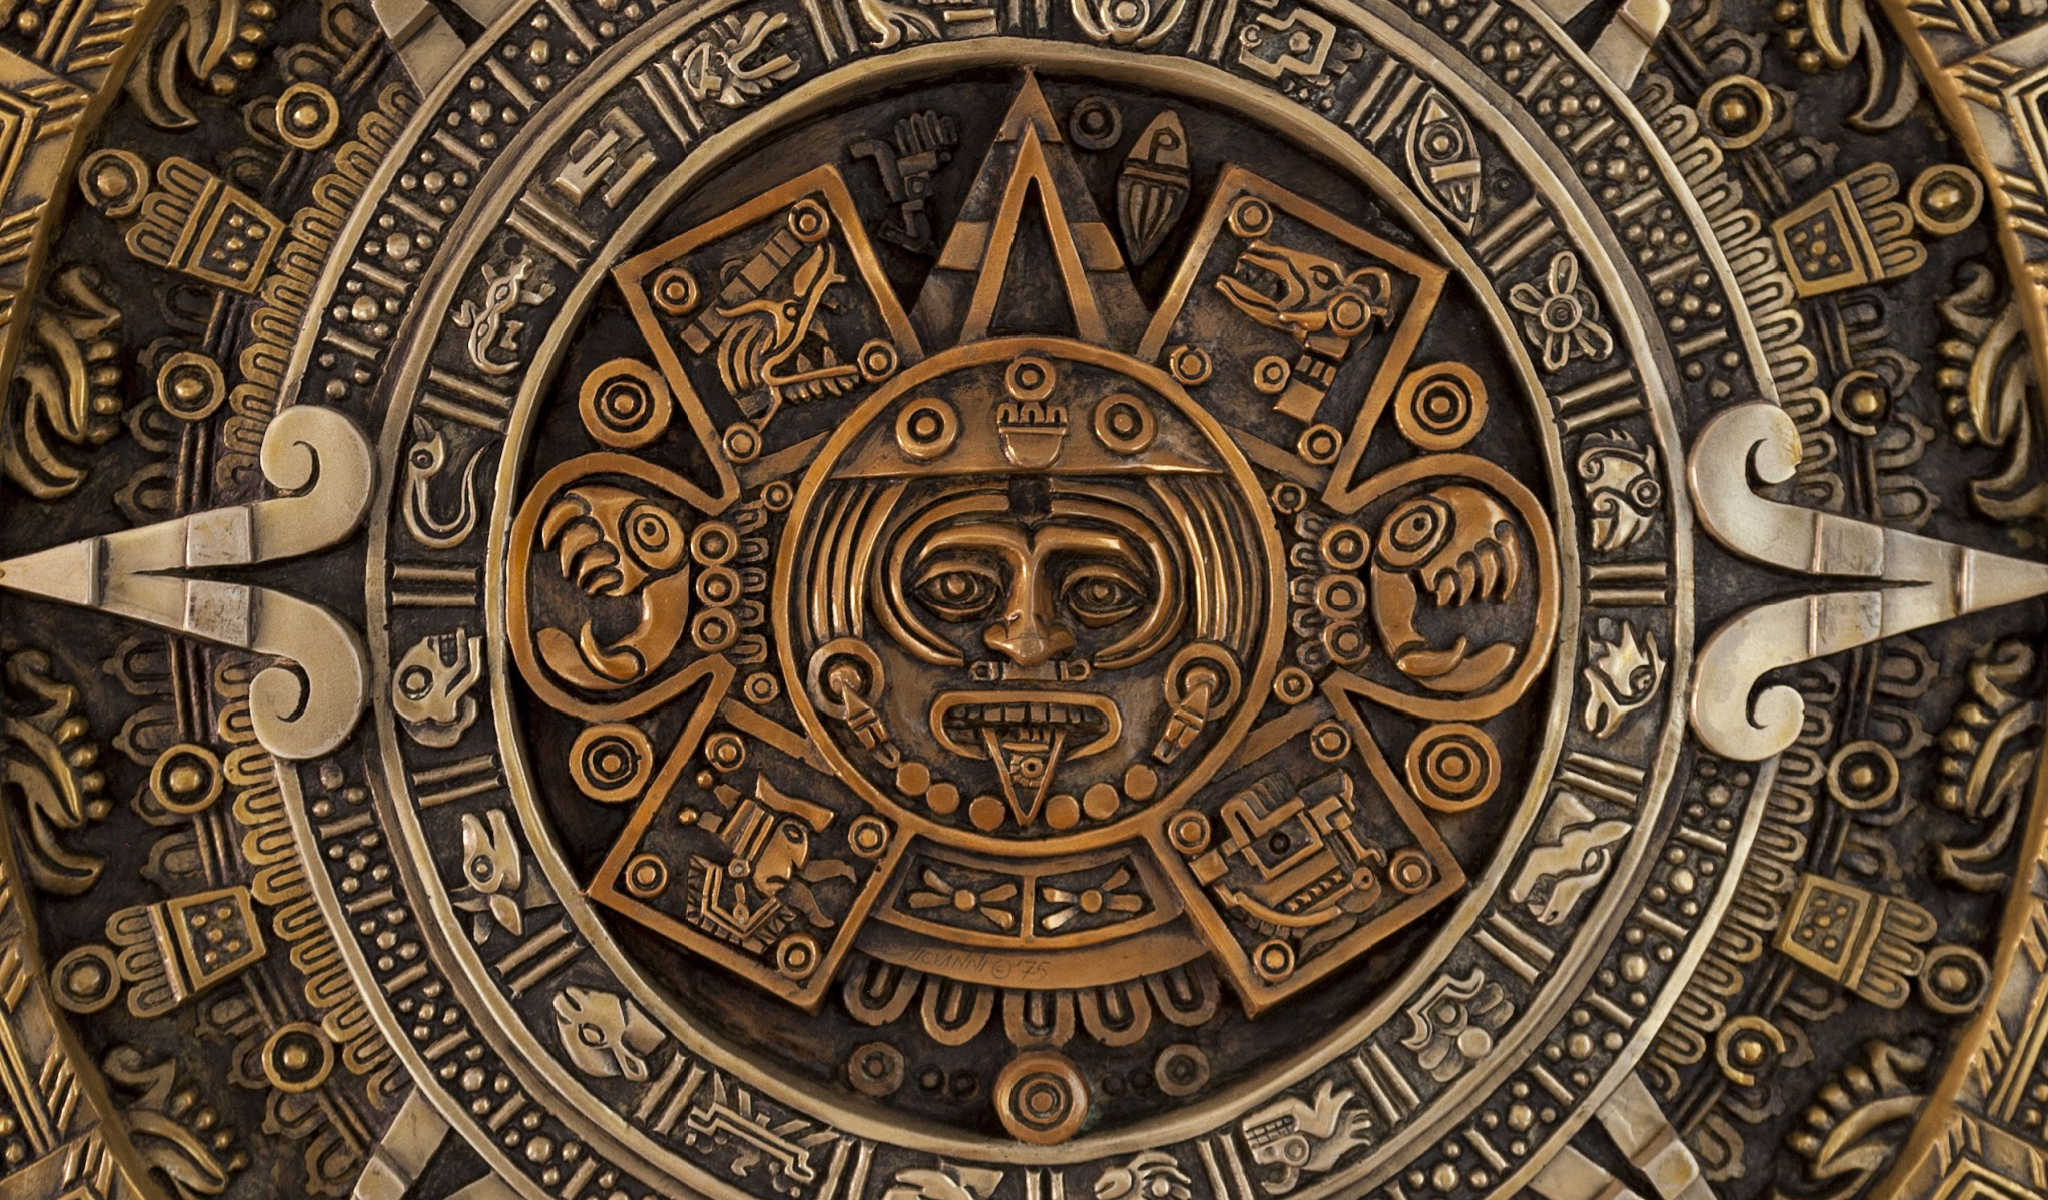 Почему произведение называется календарь майя